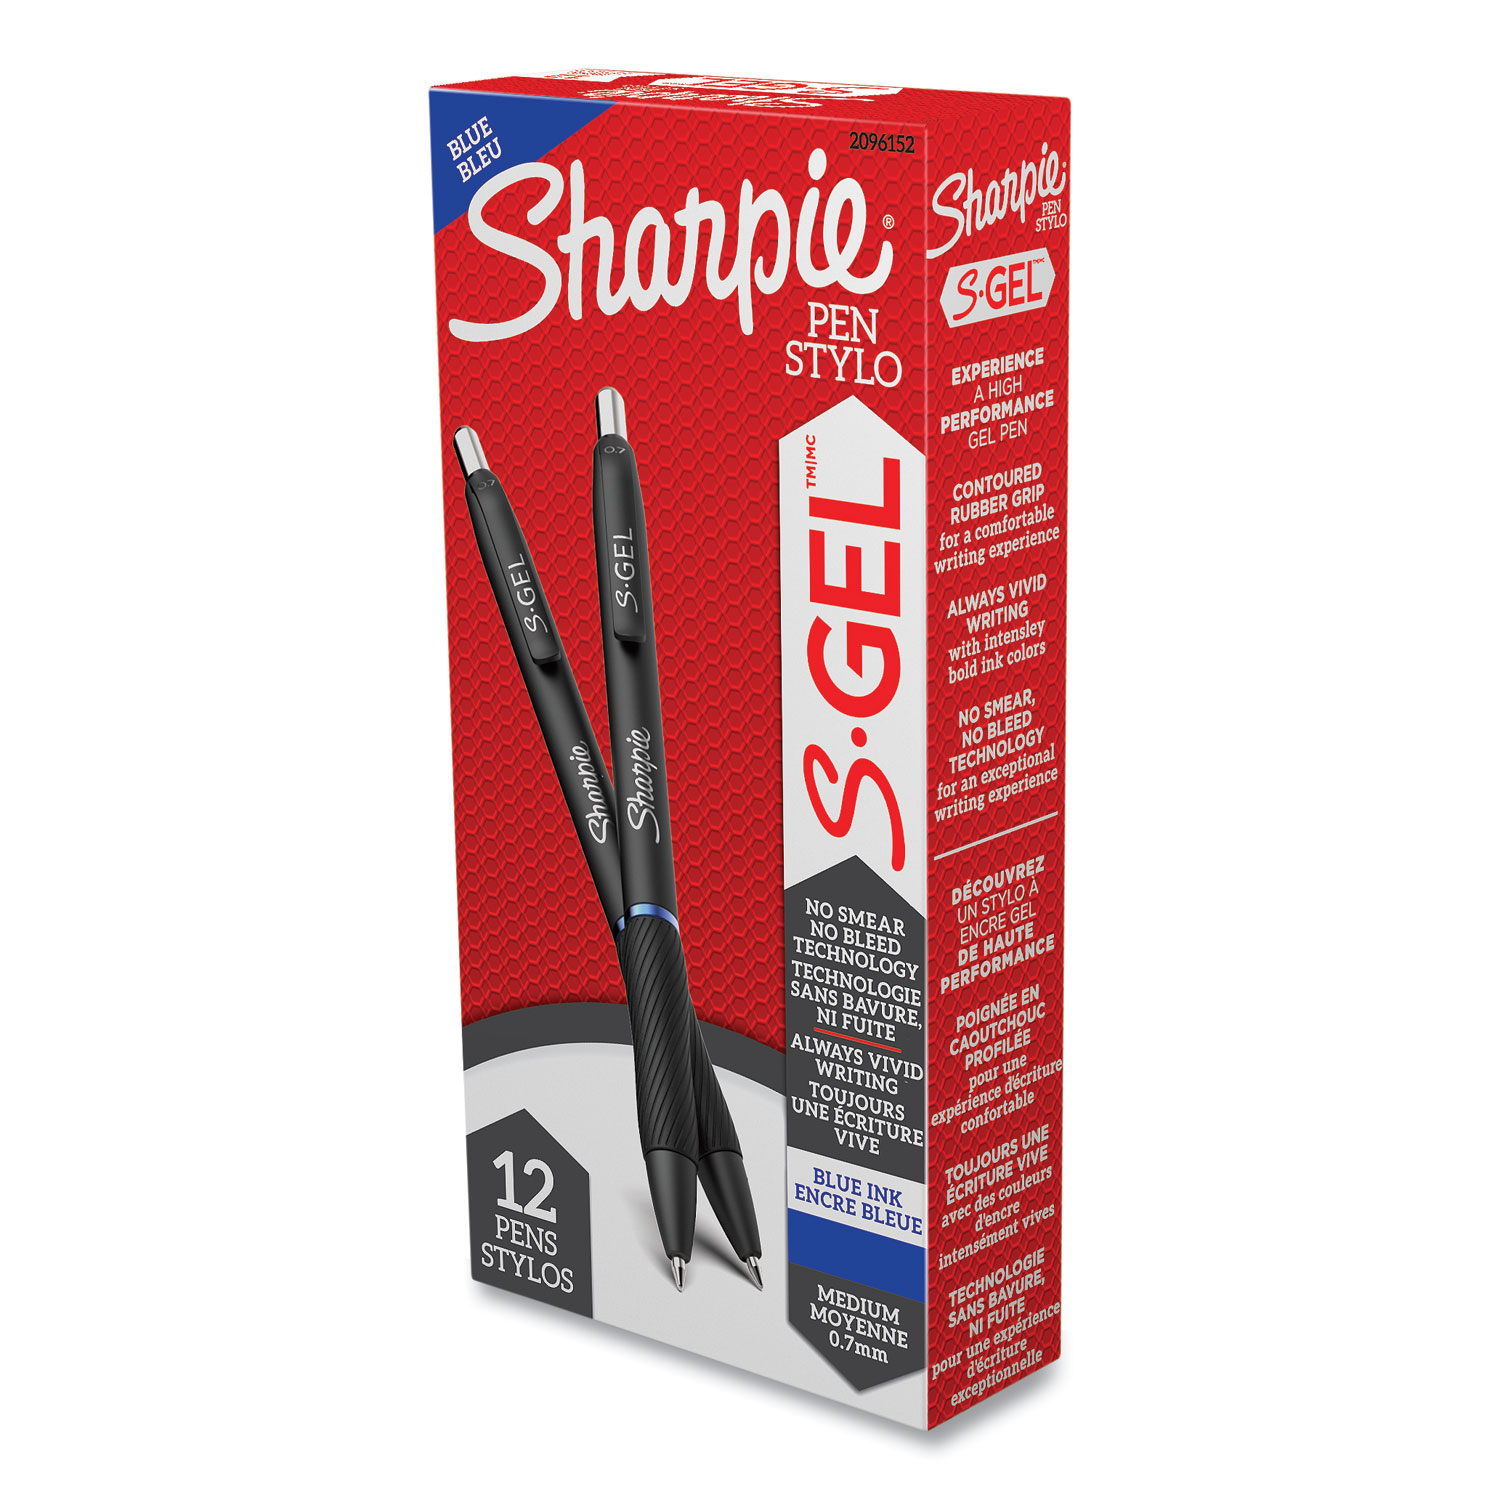 Sharpie S Gel Pens Fine Point 0.5 mm Black Barrels Blue Ink Pack